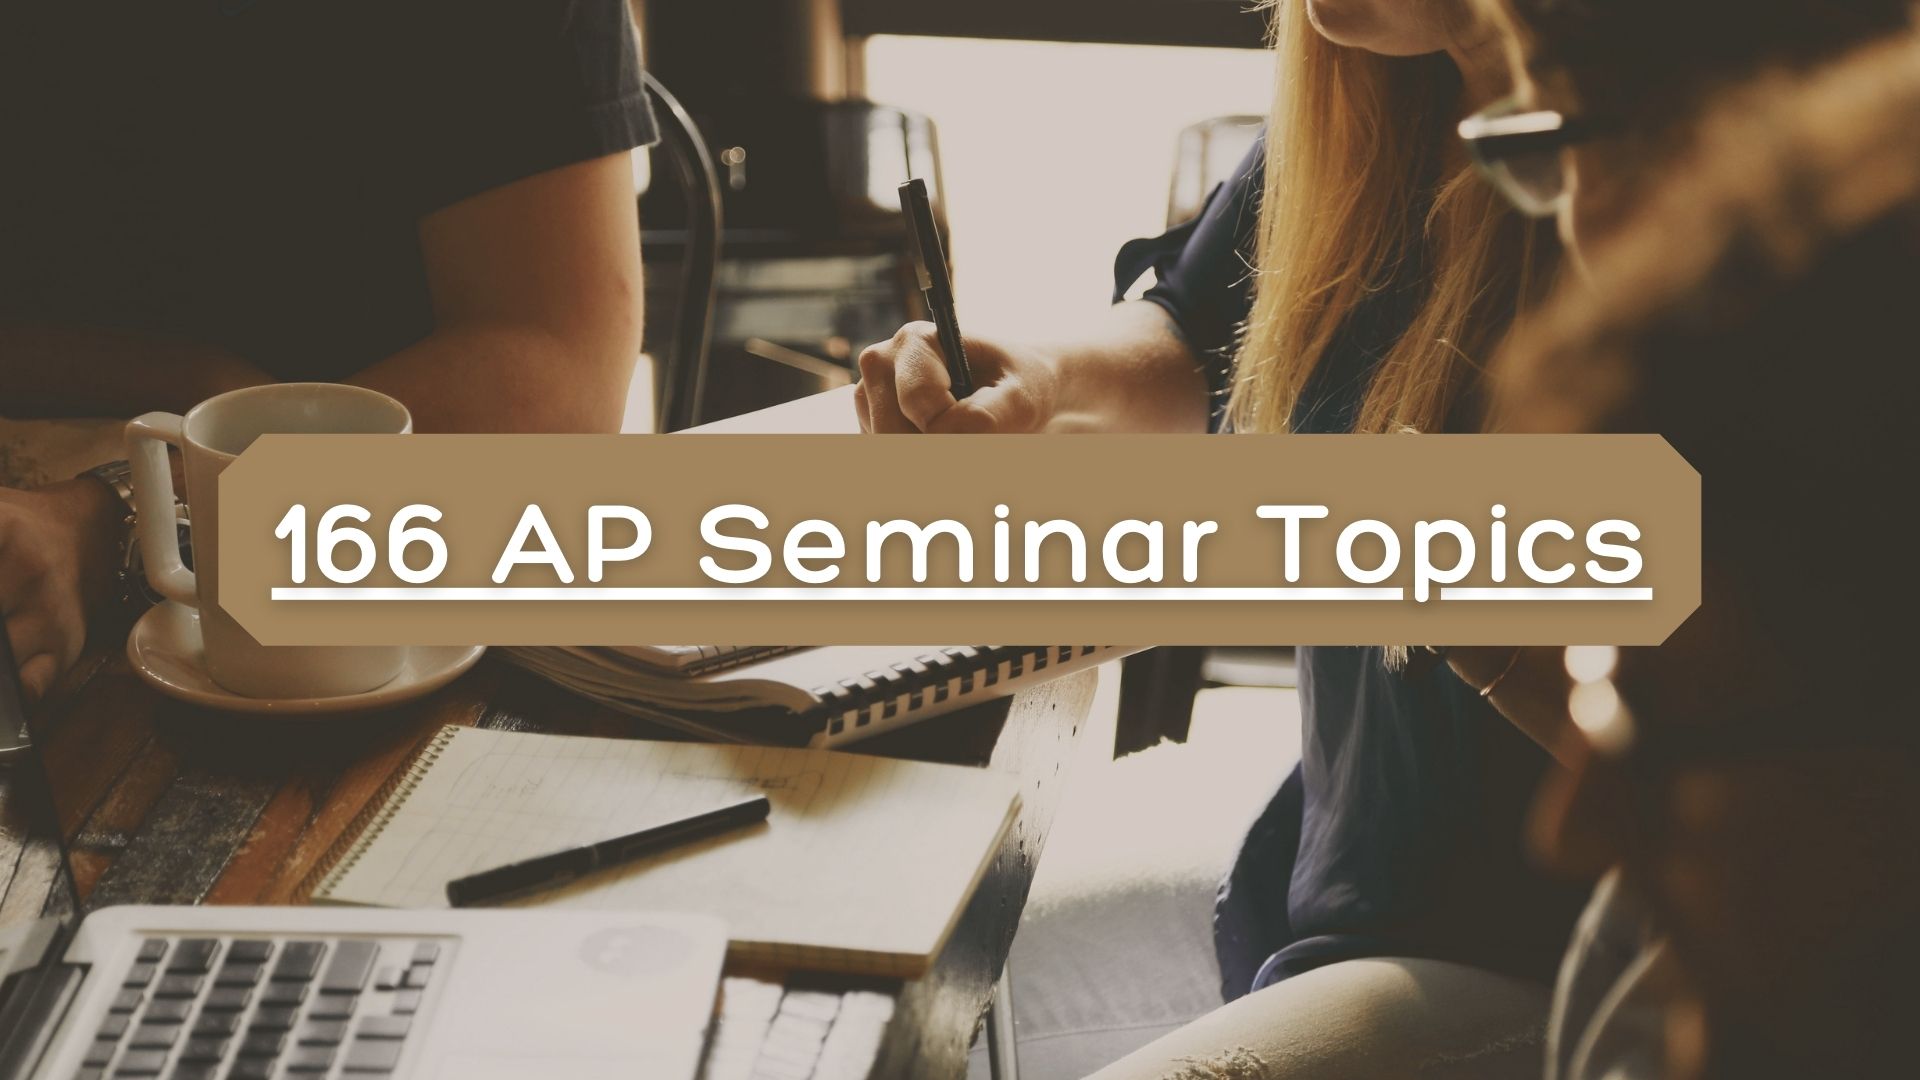 AP Seminar topics